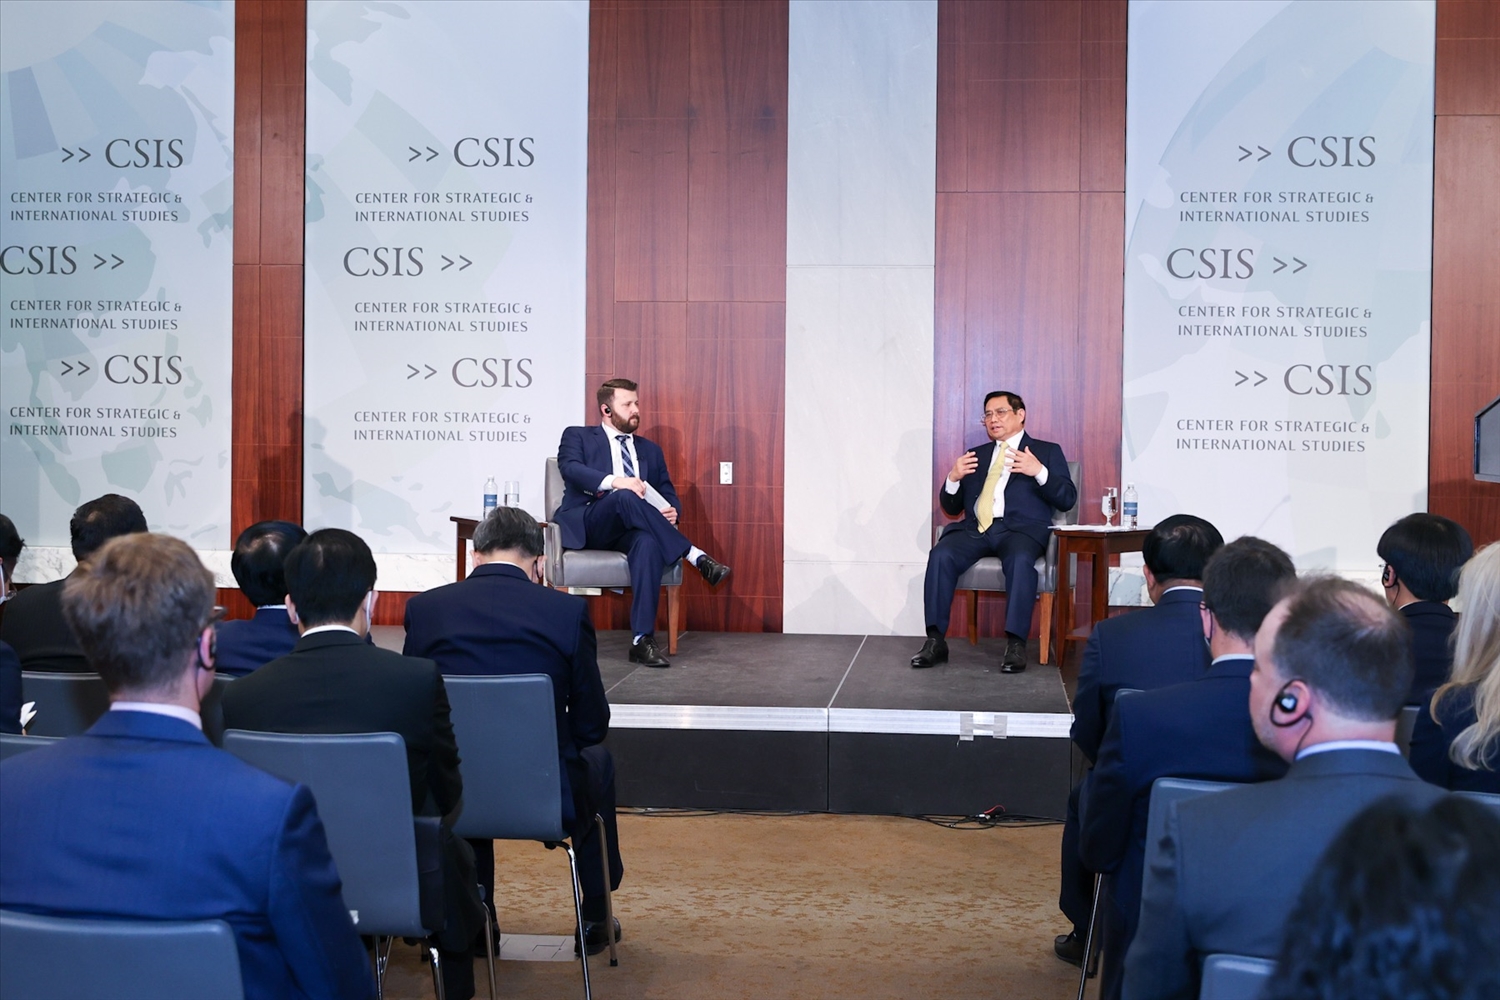 Thủ tướng Phạm Minh Chính trả lời làm rõ thêm một số vấn đề mà Chủ tịch, Giám đốc điều hành Trung tâm nghiên cứu chiến lược và quốc tế Hoa Kỳ (CSIS) nêu - Ảnh: VGP/Nhật Bắc